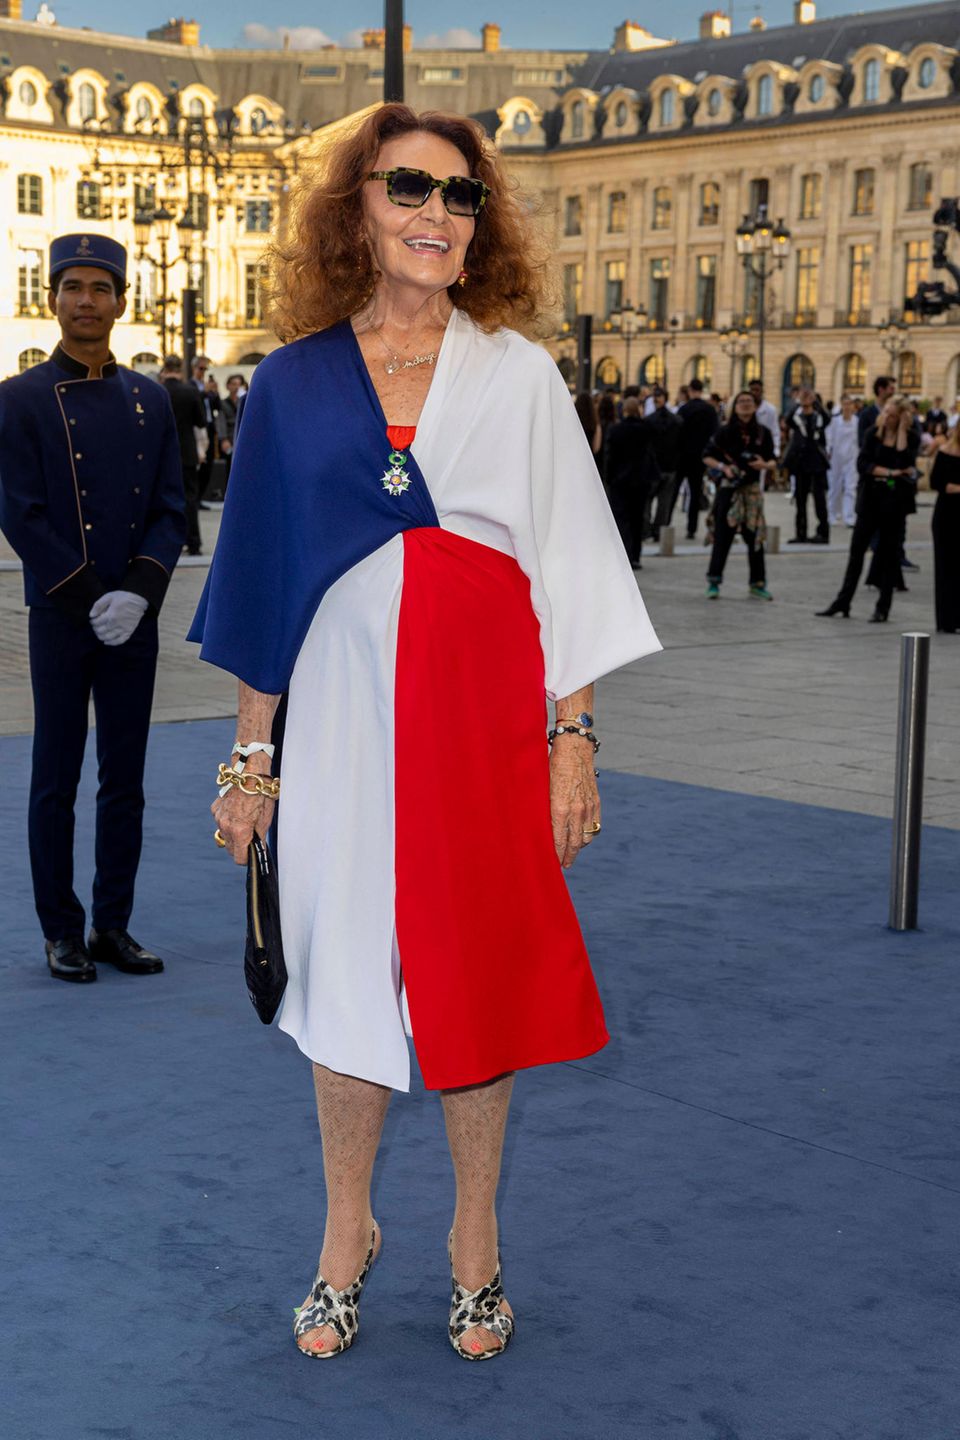 Zeig her, die französische Flagge! In Blau, Weiß und Rot betritt Diane von Fürstenberg den taubenblauen Teppich. Gewagt kombiniert sie den Blockfarben-Style zu ebenso Hingucker-Heels in angesagter Leo-Optik. 